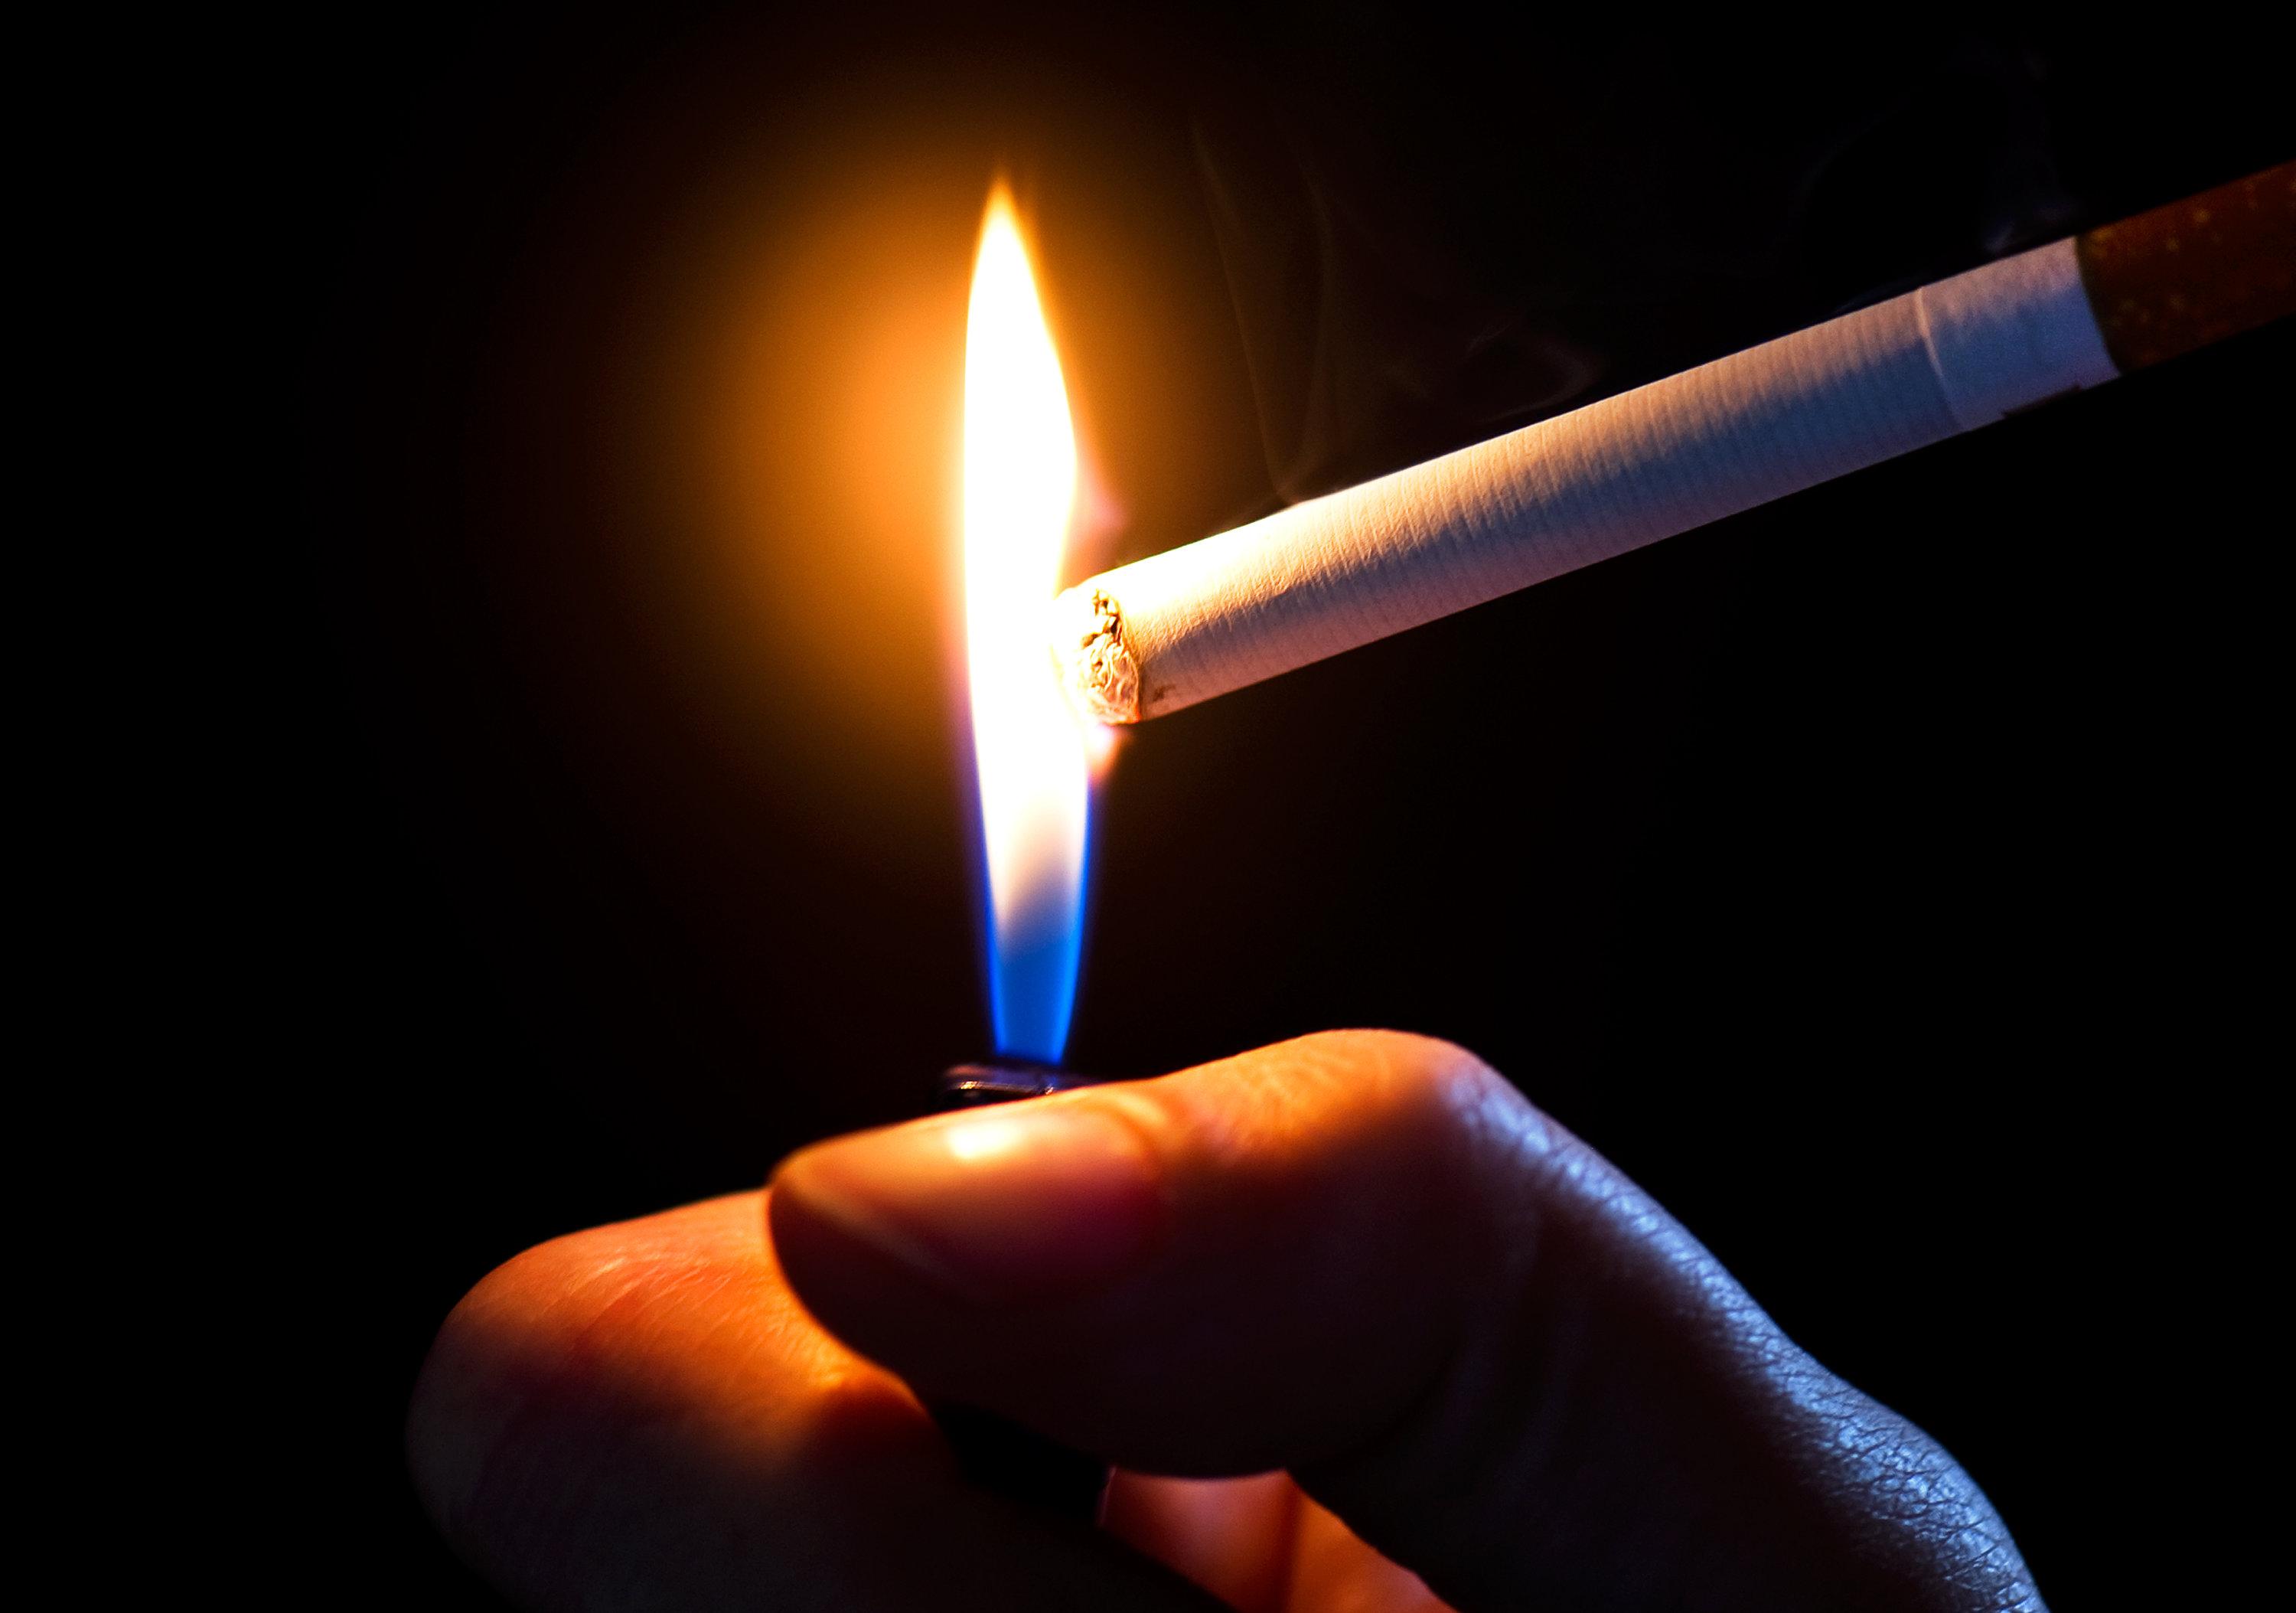 83-Jährige tot: Zigarette löste vermutlich Brand aus